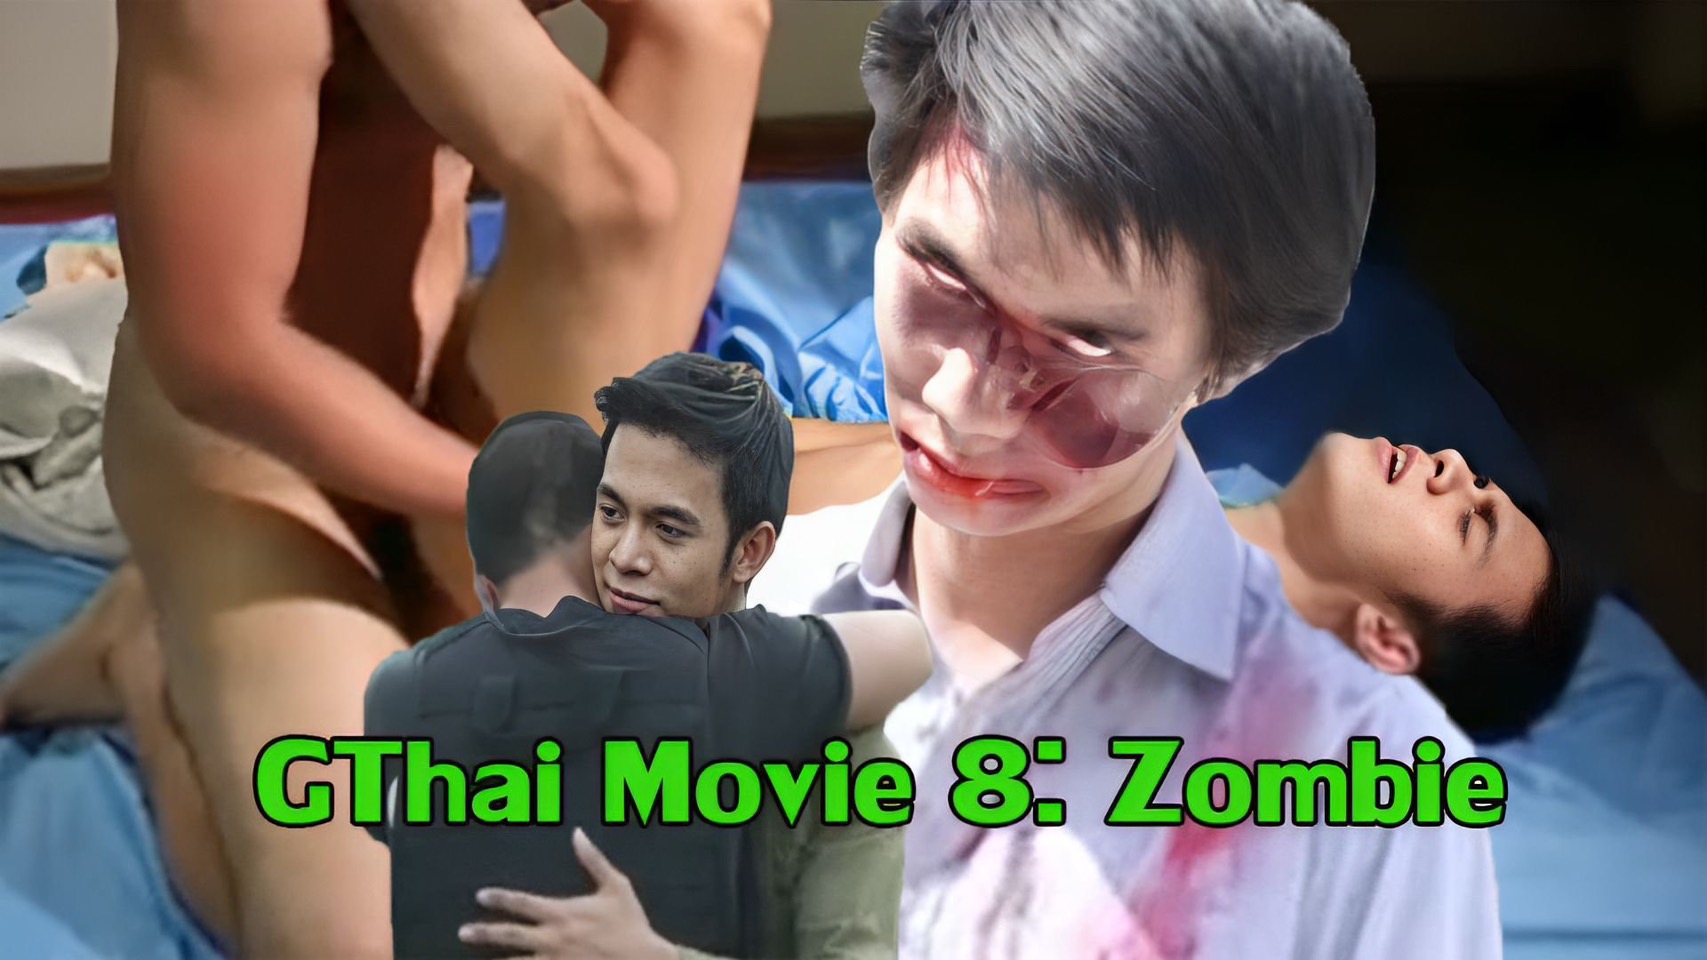 GThai Movie 8: Zombie หนังXXXเกย์ไทย ทหารรับจ้างเกย์หนุ่มซึ้งใจที่เพื่อนพาบุกดงซอมบี้ เลยไปกระแทกรูขี้ที่ห้องพัก เชื่อมความสัมพันธ์รักเกินเพื่อนแบบยอดชาย ยัดควยใหญ่เย็ดรูตูดจนแหก จับกระแทกจนน้ำรักหลั่งใน